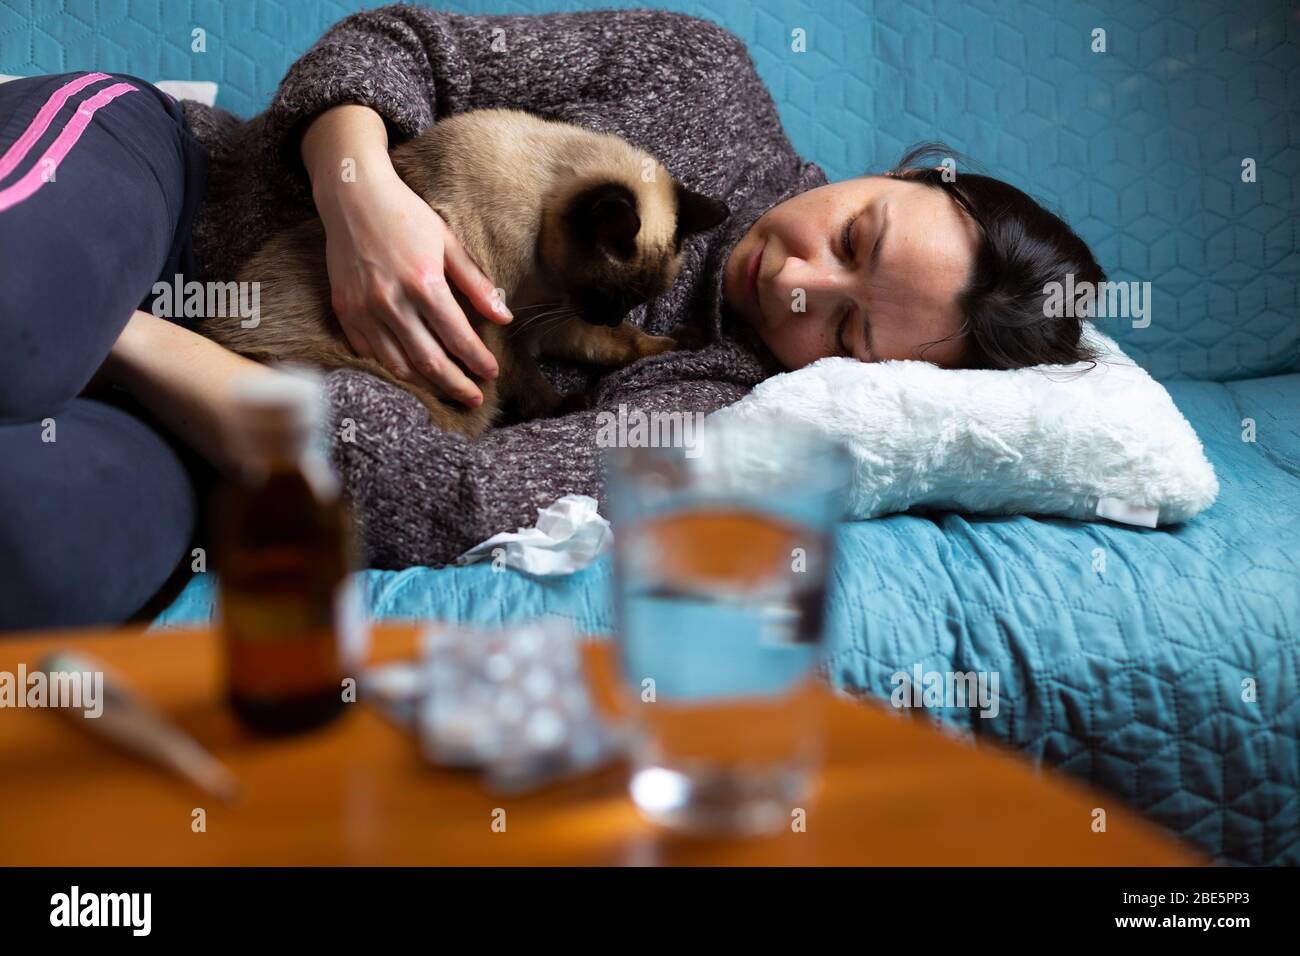 Frau fühlt sich krank auf der Couch sitzend mit ihrer Katze in den Armen. Konzentriere dich auf das Gesicht der Frau. Stockfoto